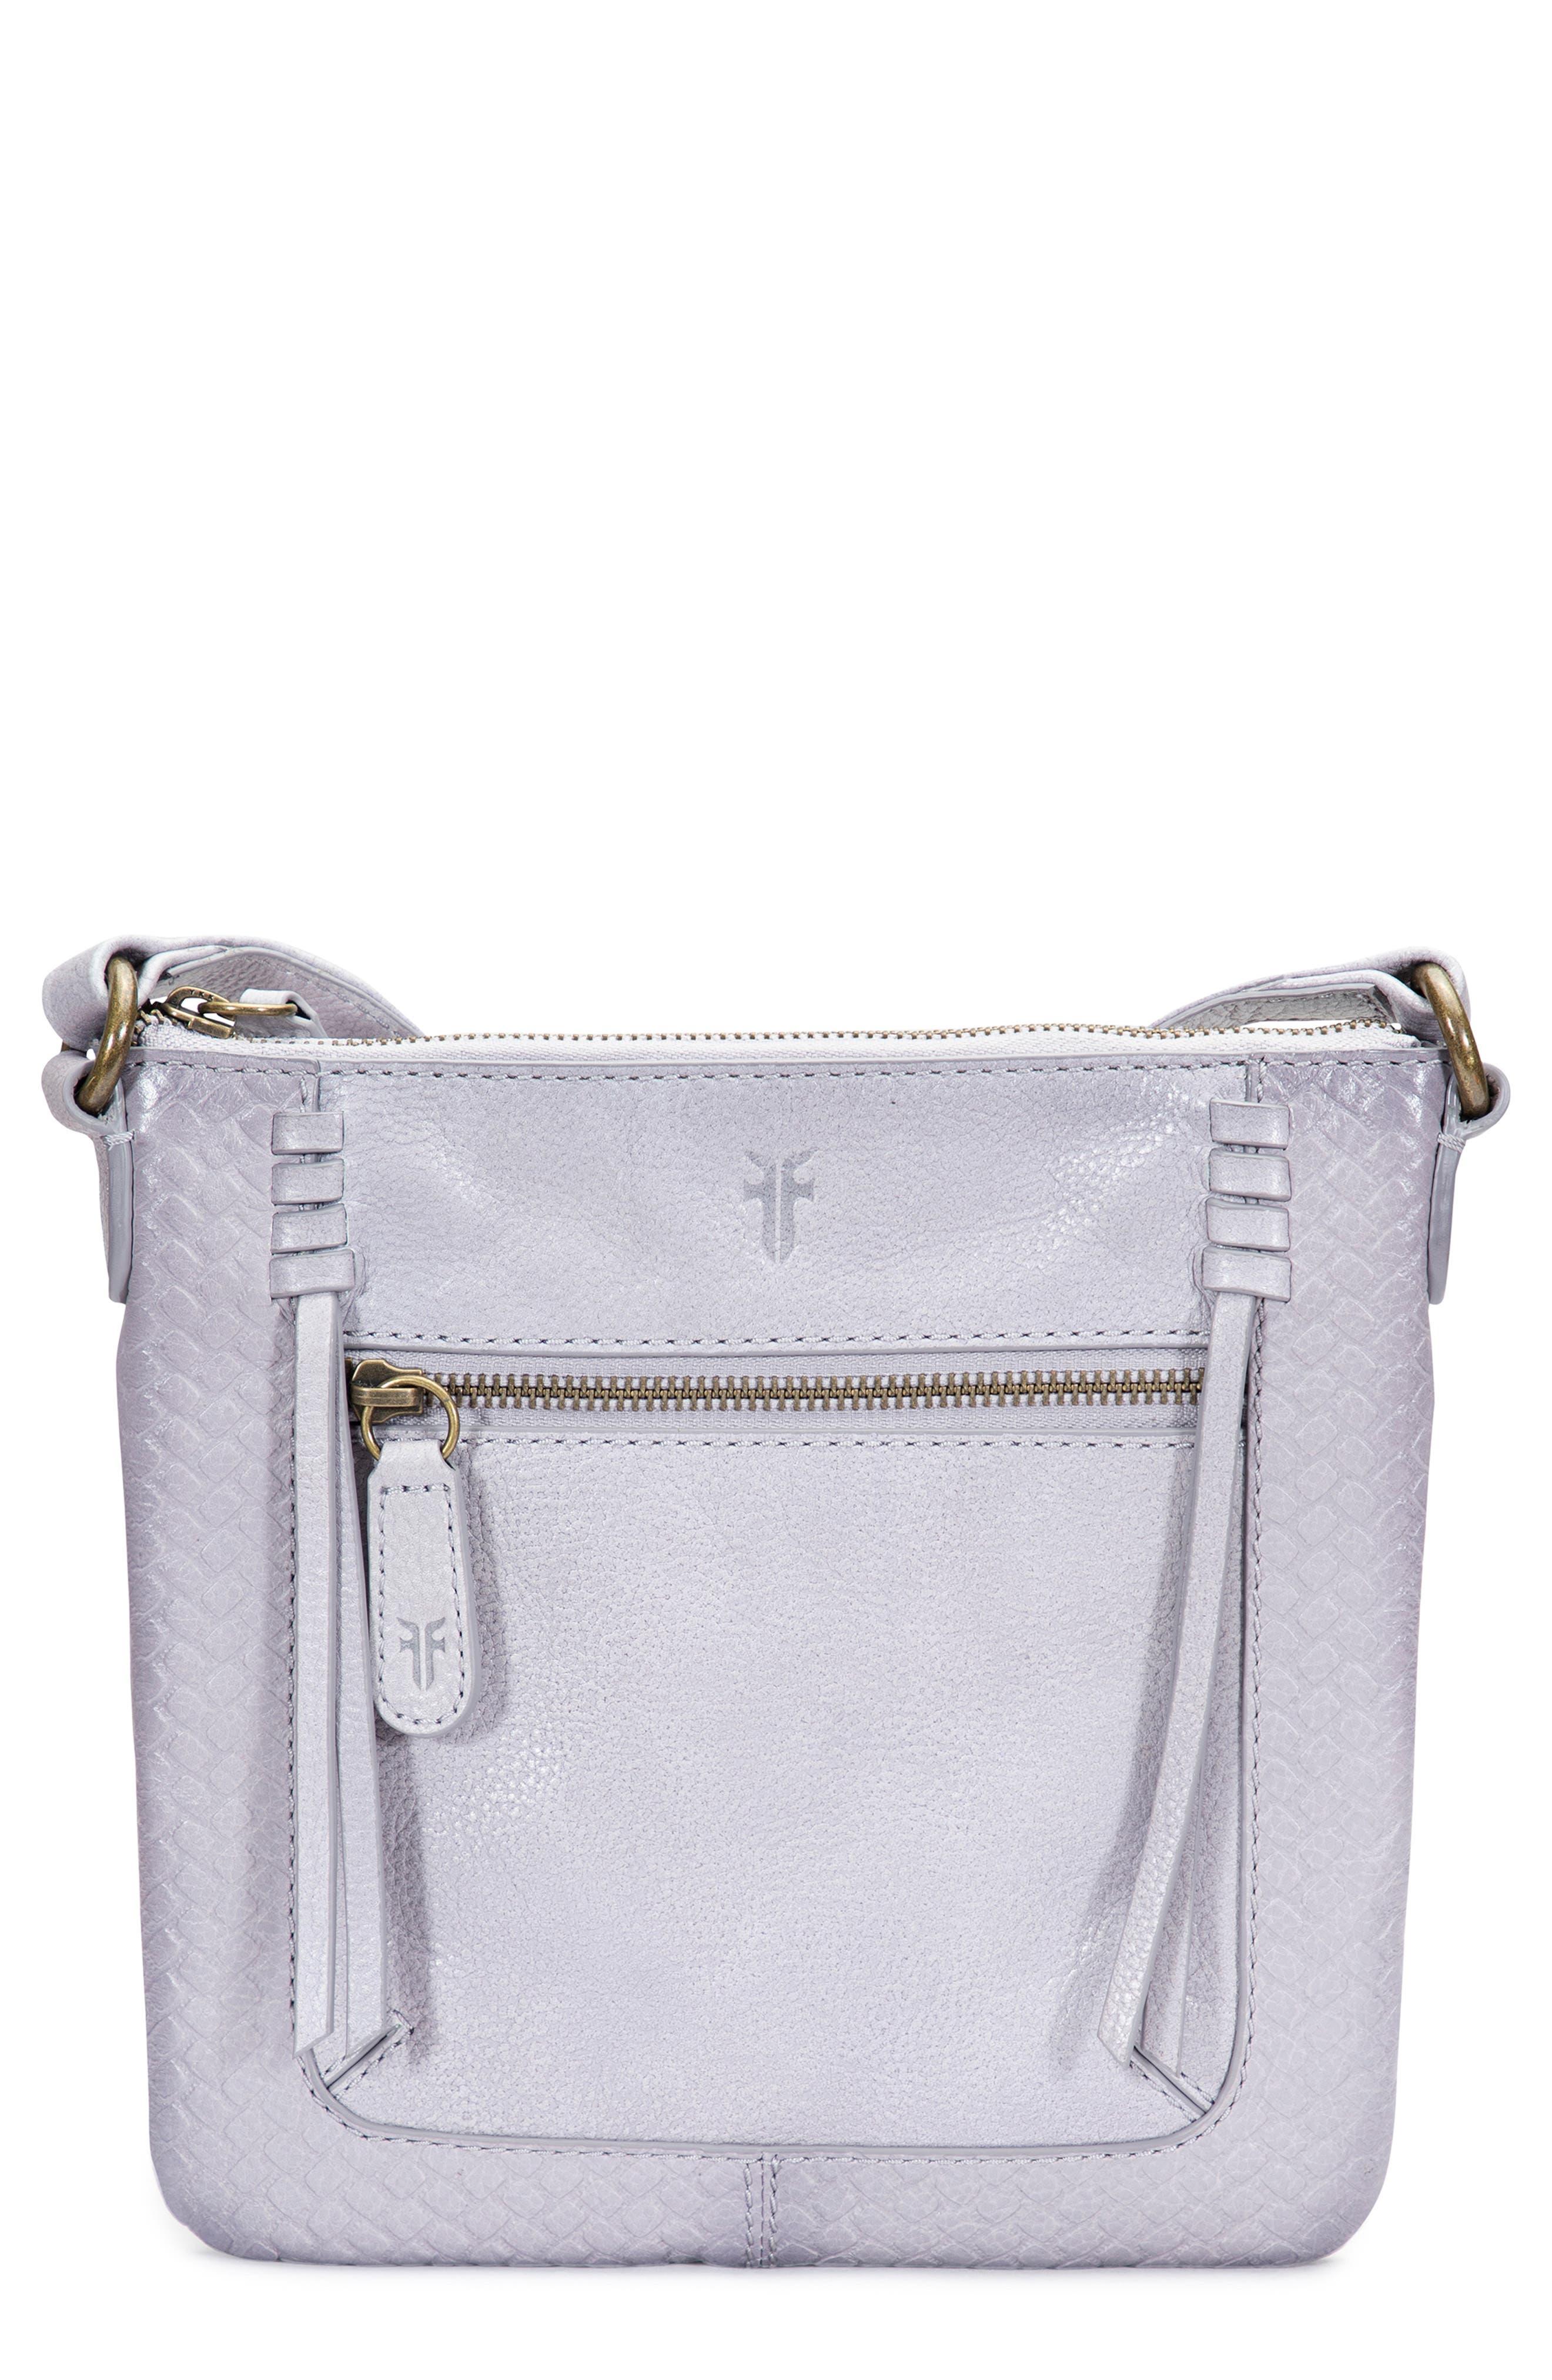 Frye Freya Medium Leather Crossbody Bag in Purple | Lyst